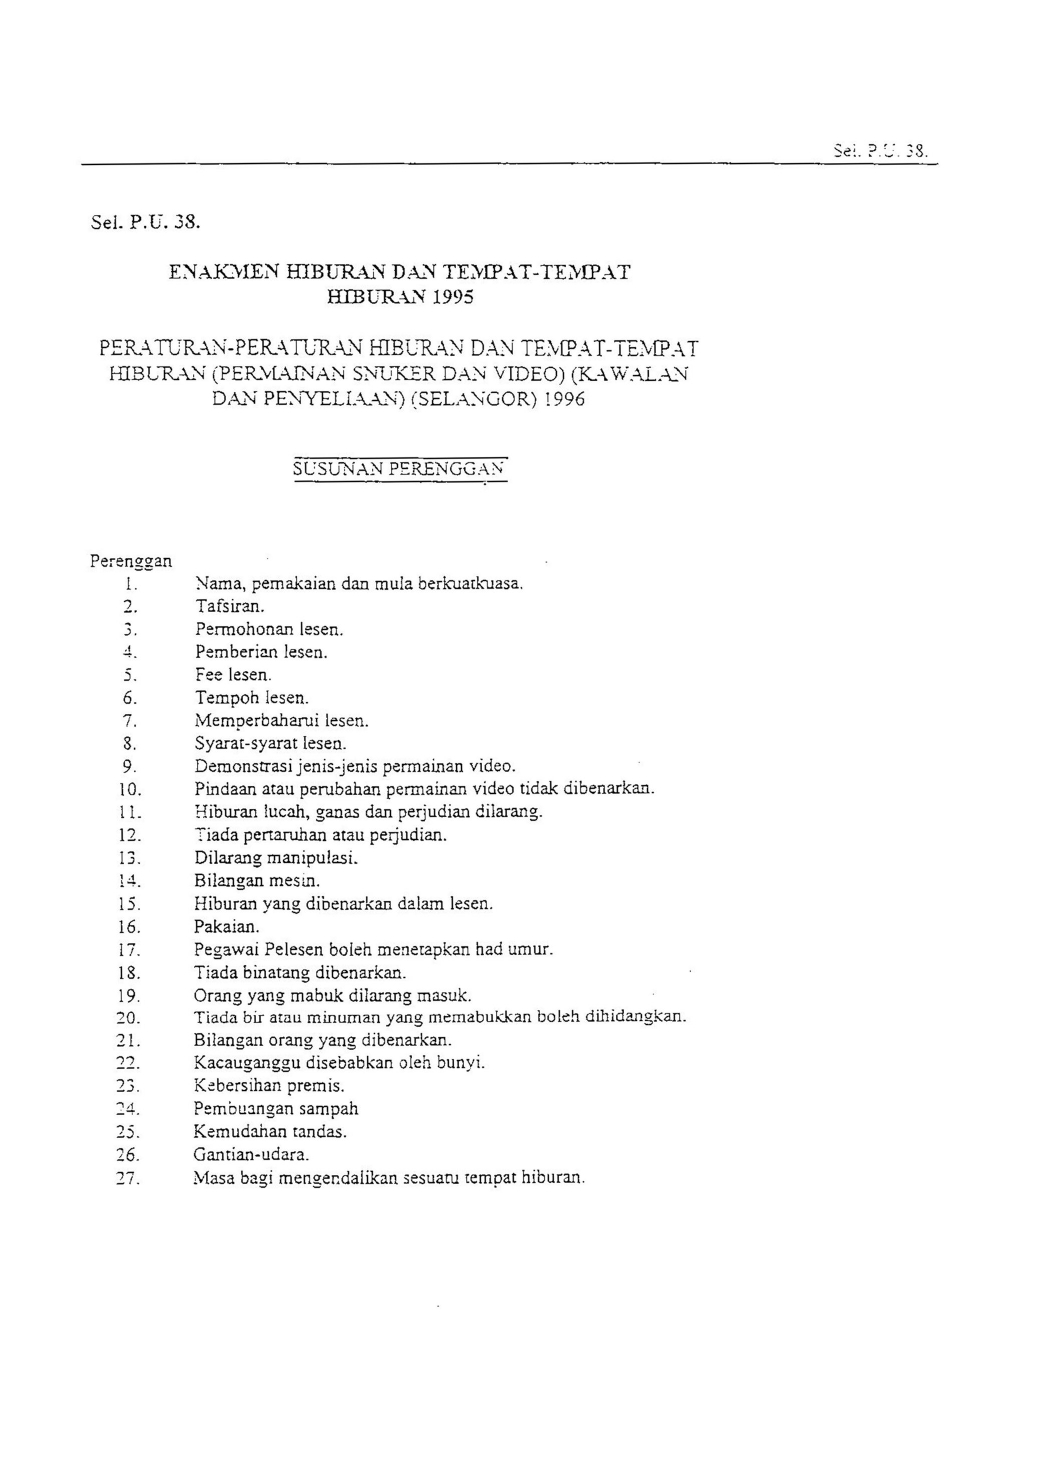 Peraturan-Peraturan Hiburan Dan Tempat-Tempat Hiburan (Permainan Snuker Dan Video) (Kawalan Dan Penyeliaan) (Selangor) 1996 – Enakmen Hiburan Dan Tempat – Tempat Hiburan 1995